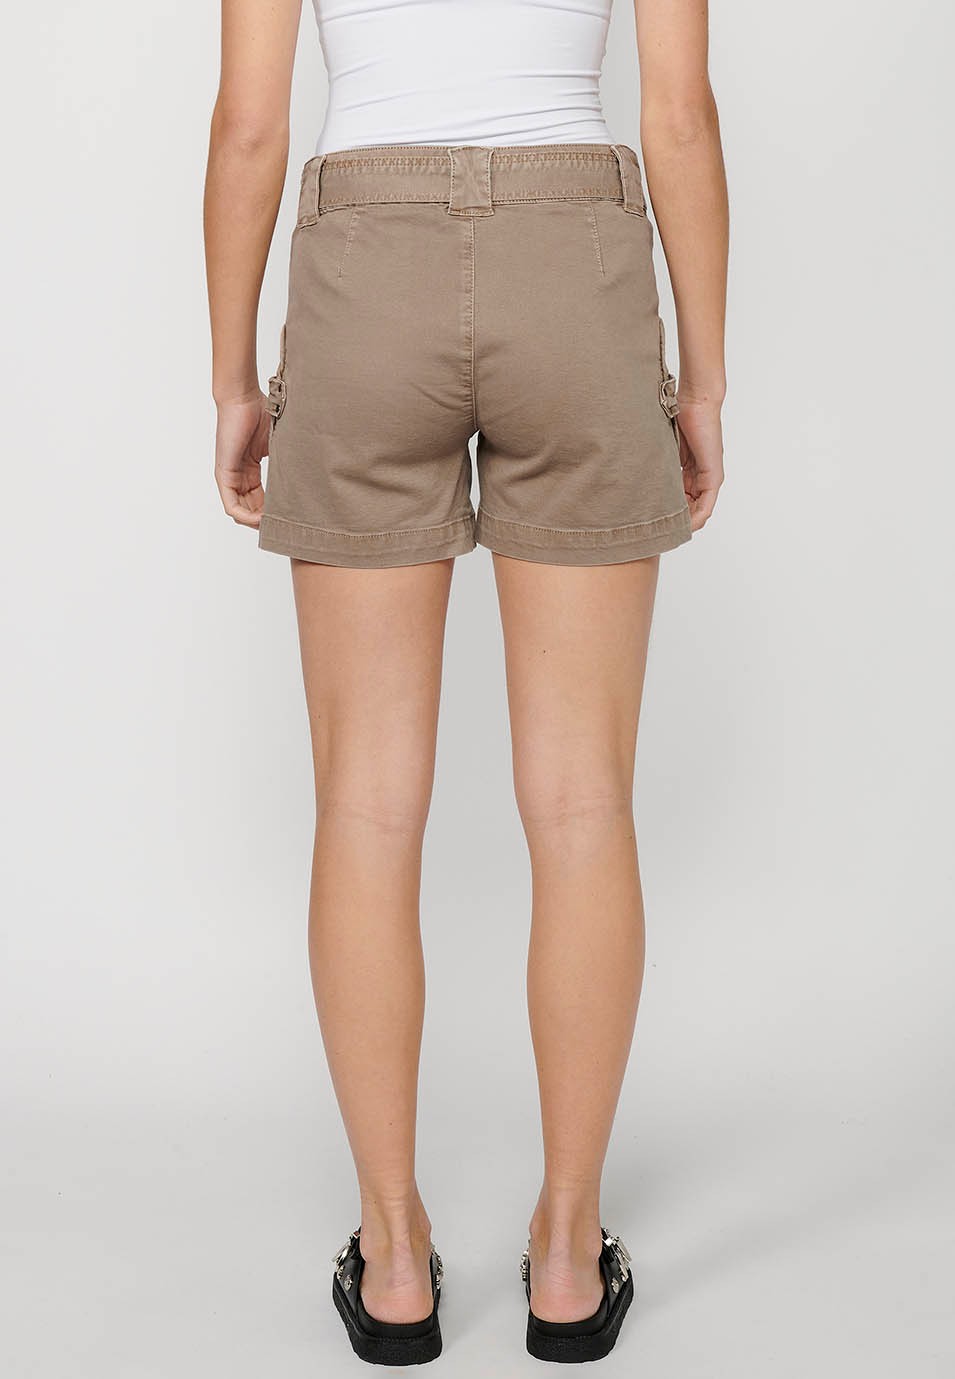 Beigefarbene Shorts mit Gürtel an der Taille und aufgesetzten Taschen für Damen